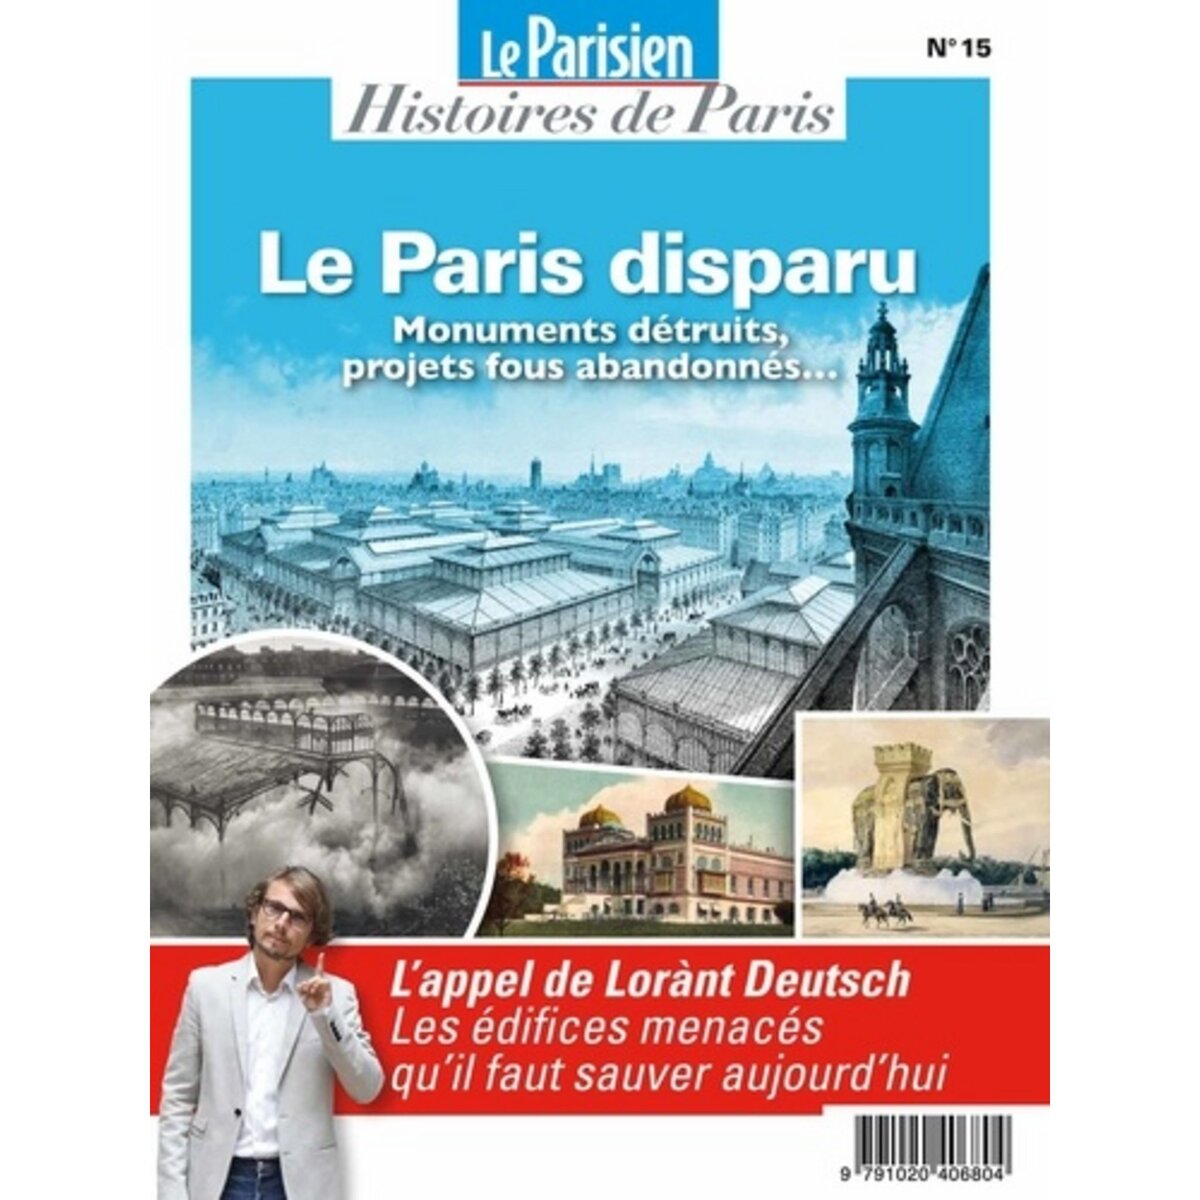  LE PARISIEN HISTOIRES DE PARIS HORS-SERIE N° 15, JUIN 2021 : LE PARIS DISPARU. MONUMENTS DETRUITS, PROJETS FOUS ABANDONNES..., Saint Sauveur Charles de